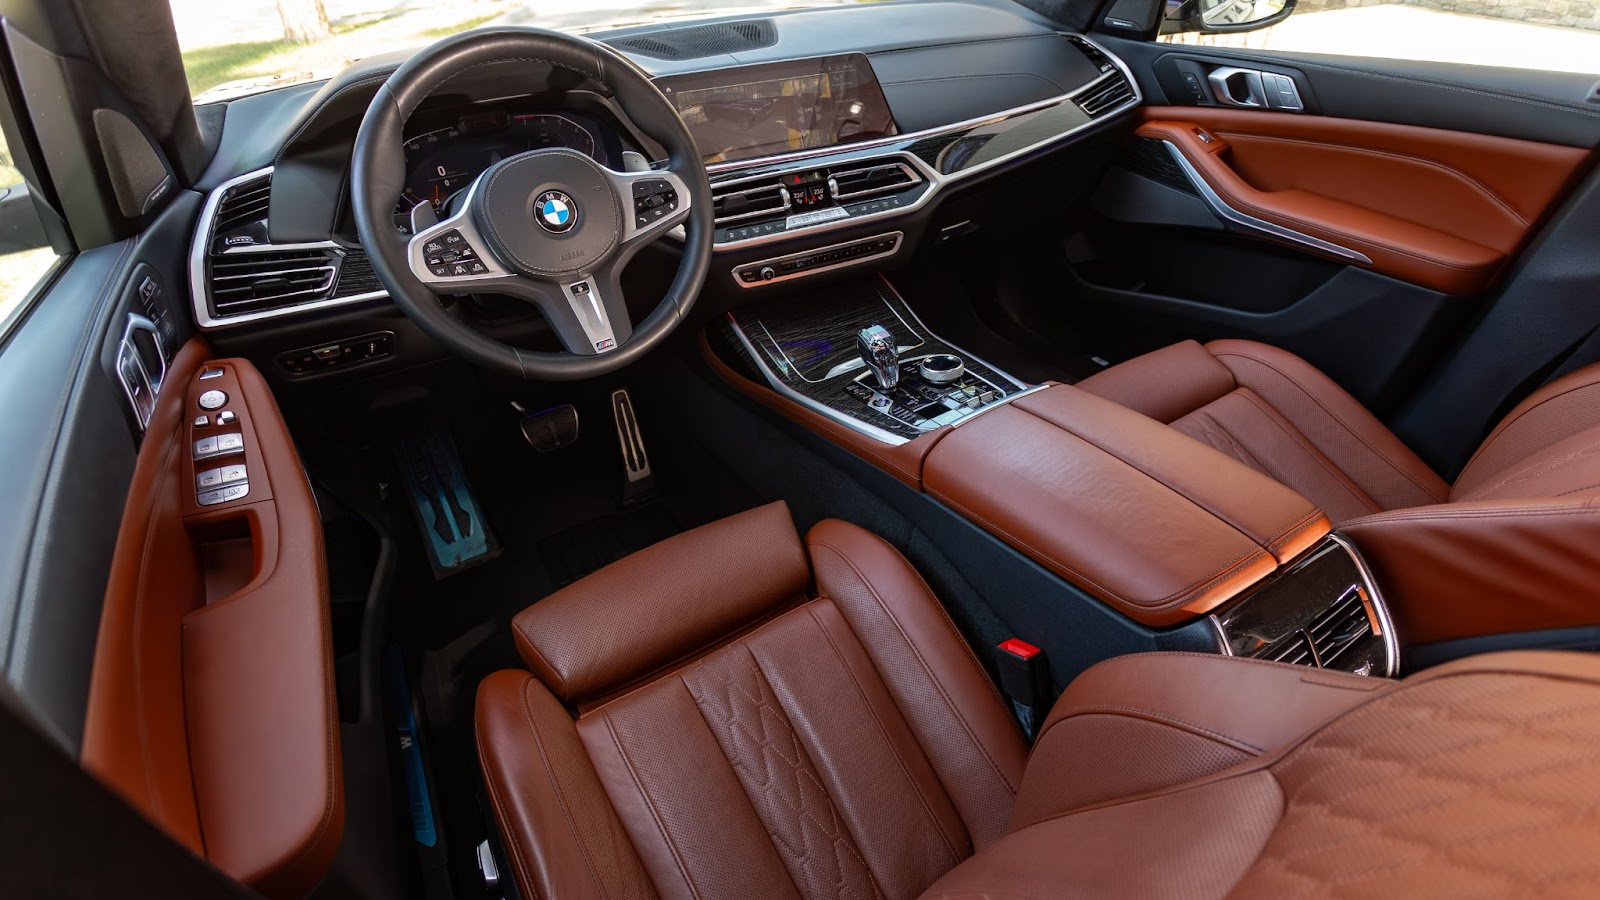 Panduan Memilih dan Merawat Jok pada Mobil BMW Bekas Harga 30 Jutaan